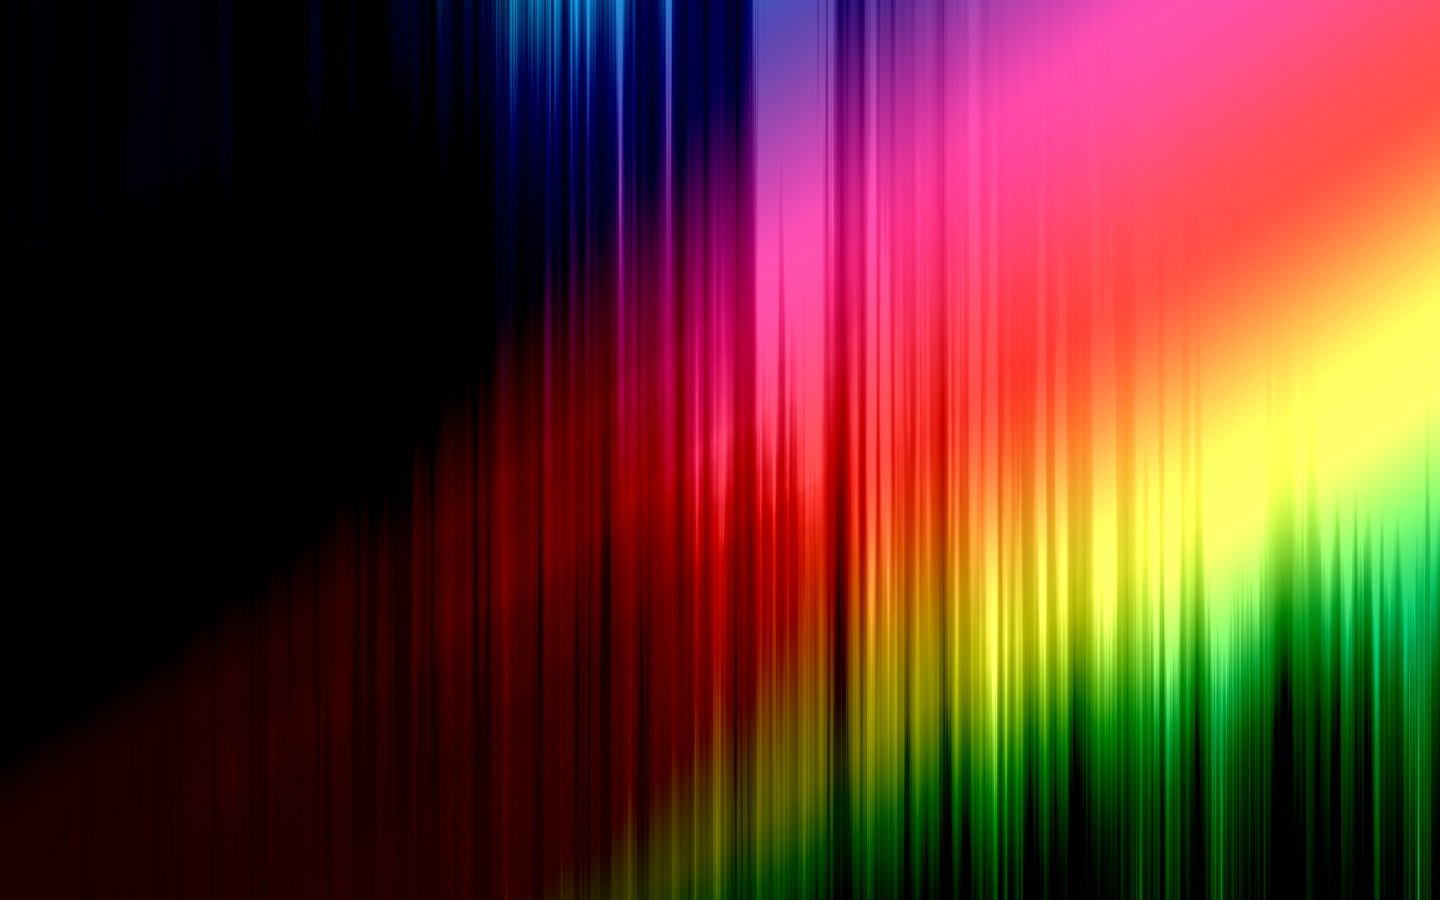 壁纸1440x900抽象背景 彩虹之色 彩虹之色 炫彩风格壁纸壁纸 抽象背景 彩虹之色壁纸 抽象背景 彩虹之色图片 抽象背景 彩虹之色素材 插画壁纸 插画图库 插画图片素材桌面壁纸